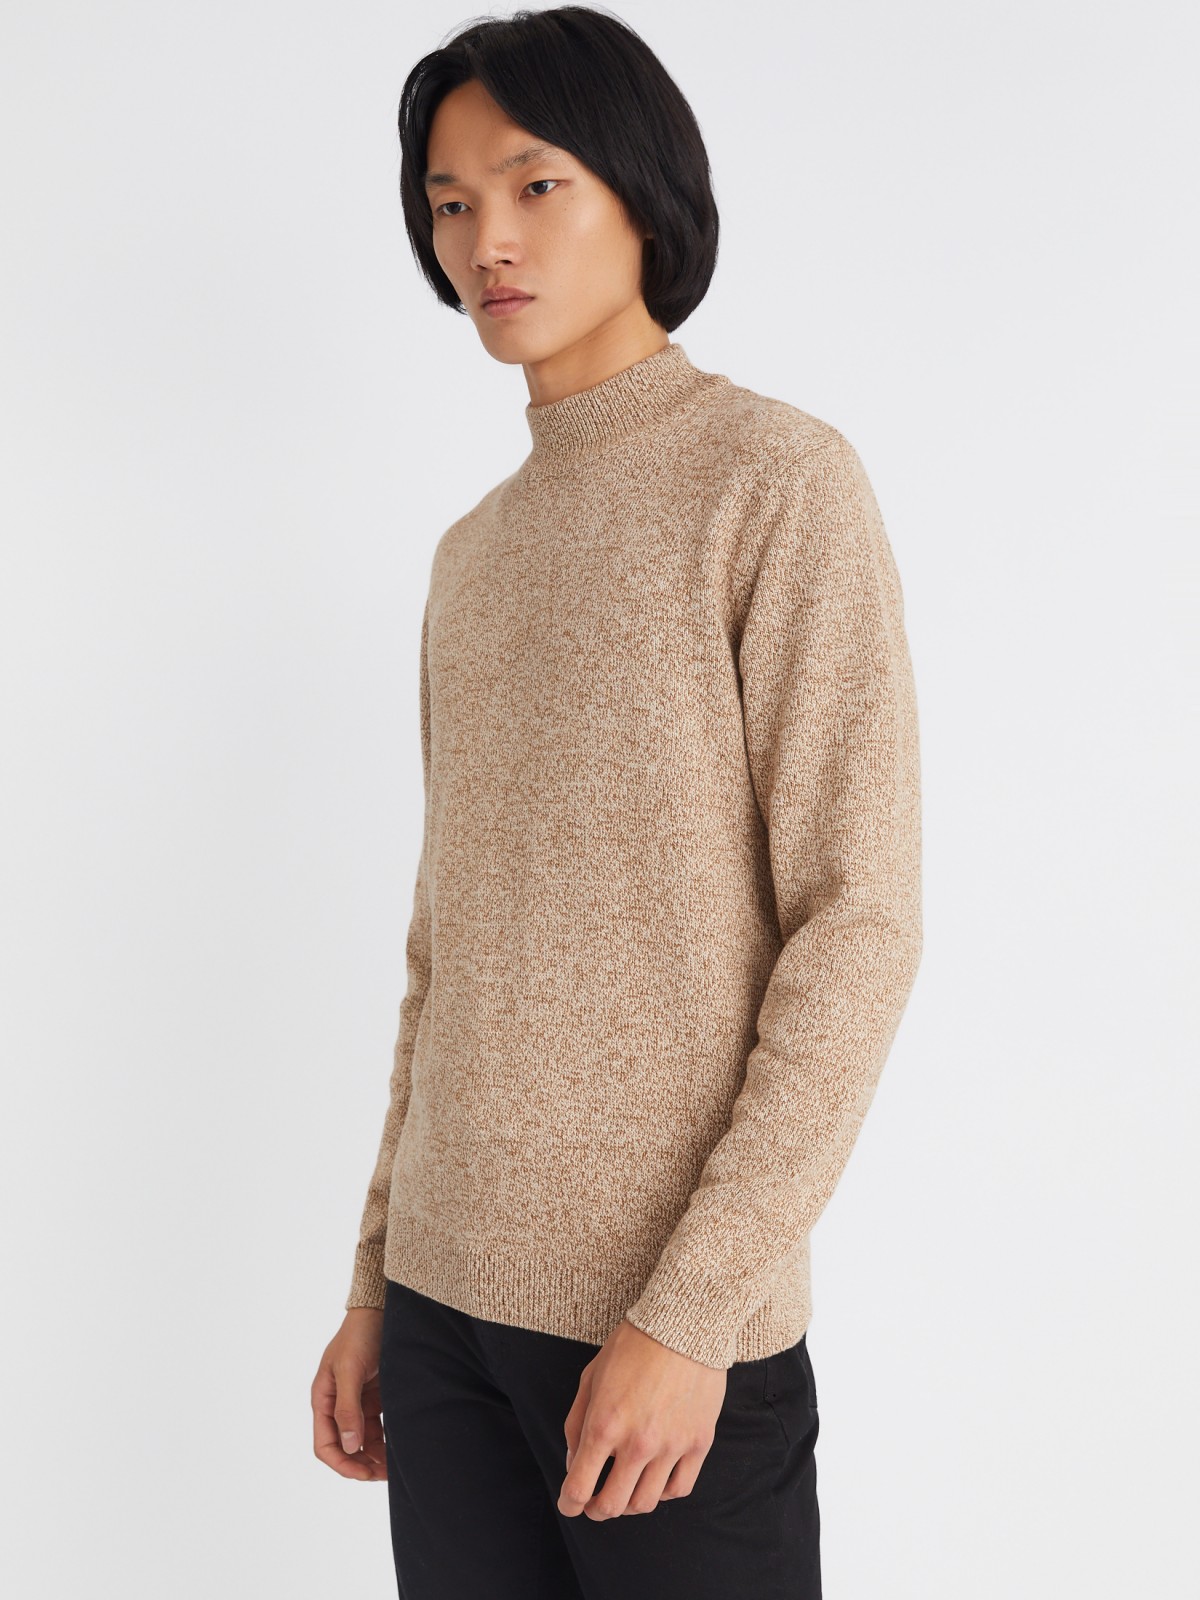 Вязаный свитер из хлопка с воротником-полустойкой и длинным рукавом zolla 012346183043, цвет бежевый, размер S - фото 4